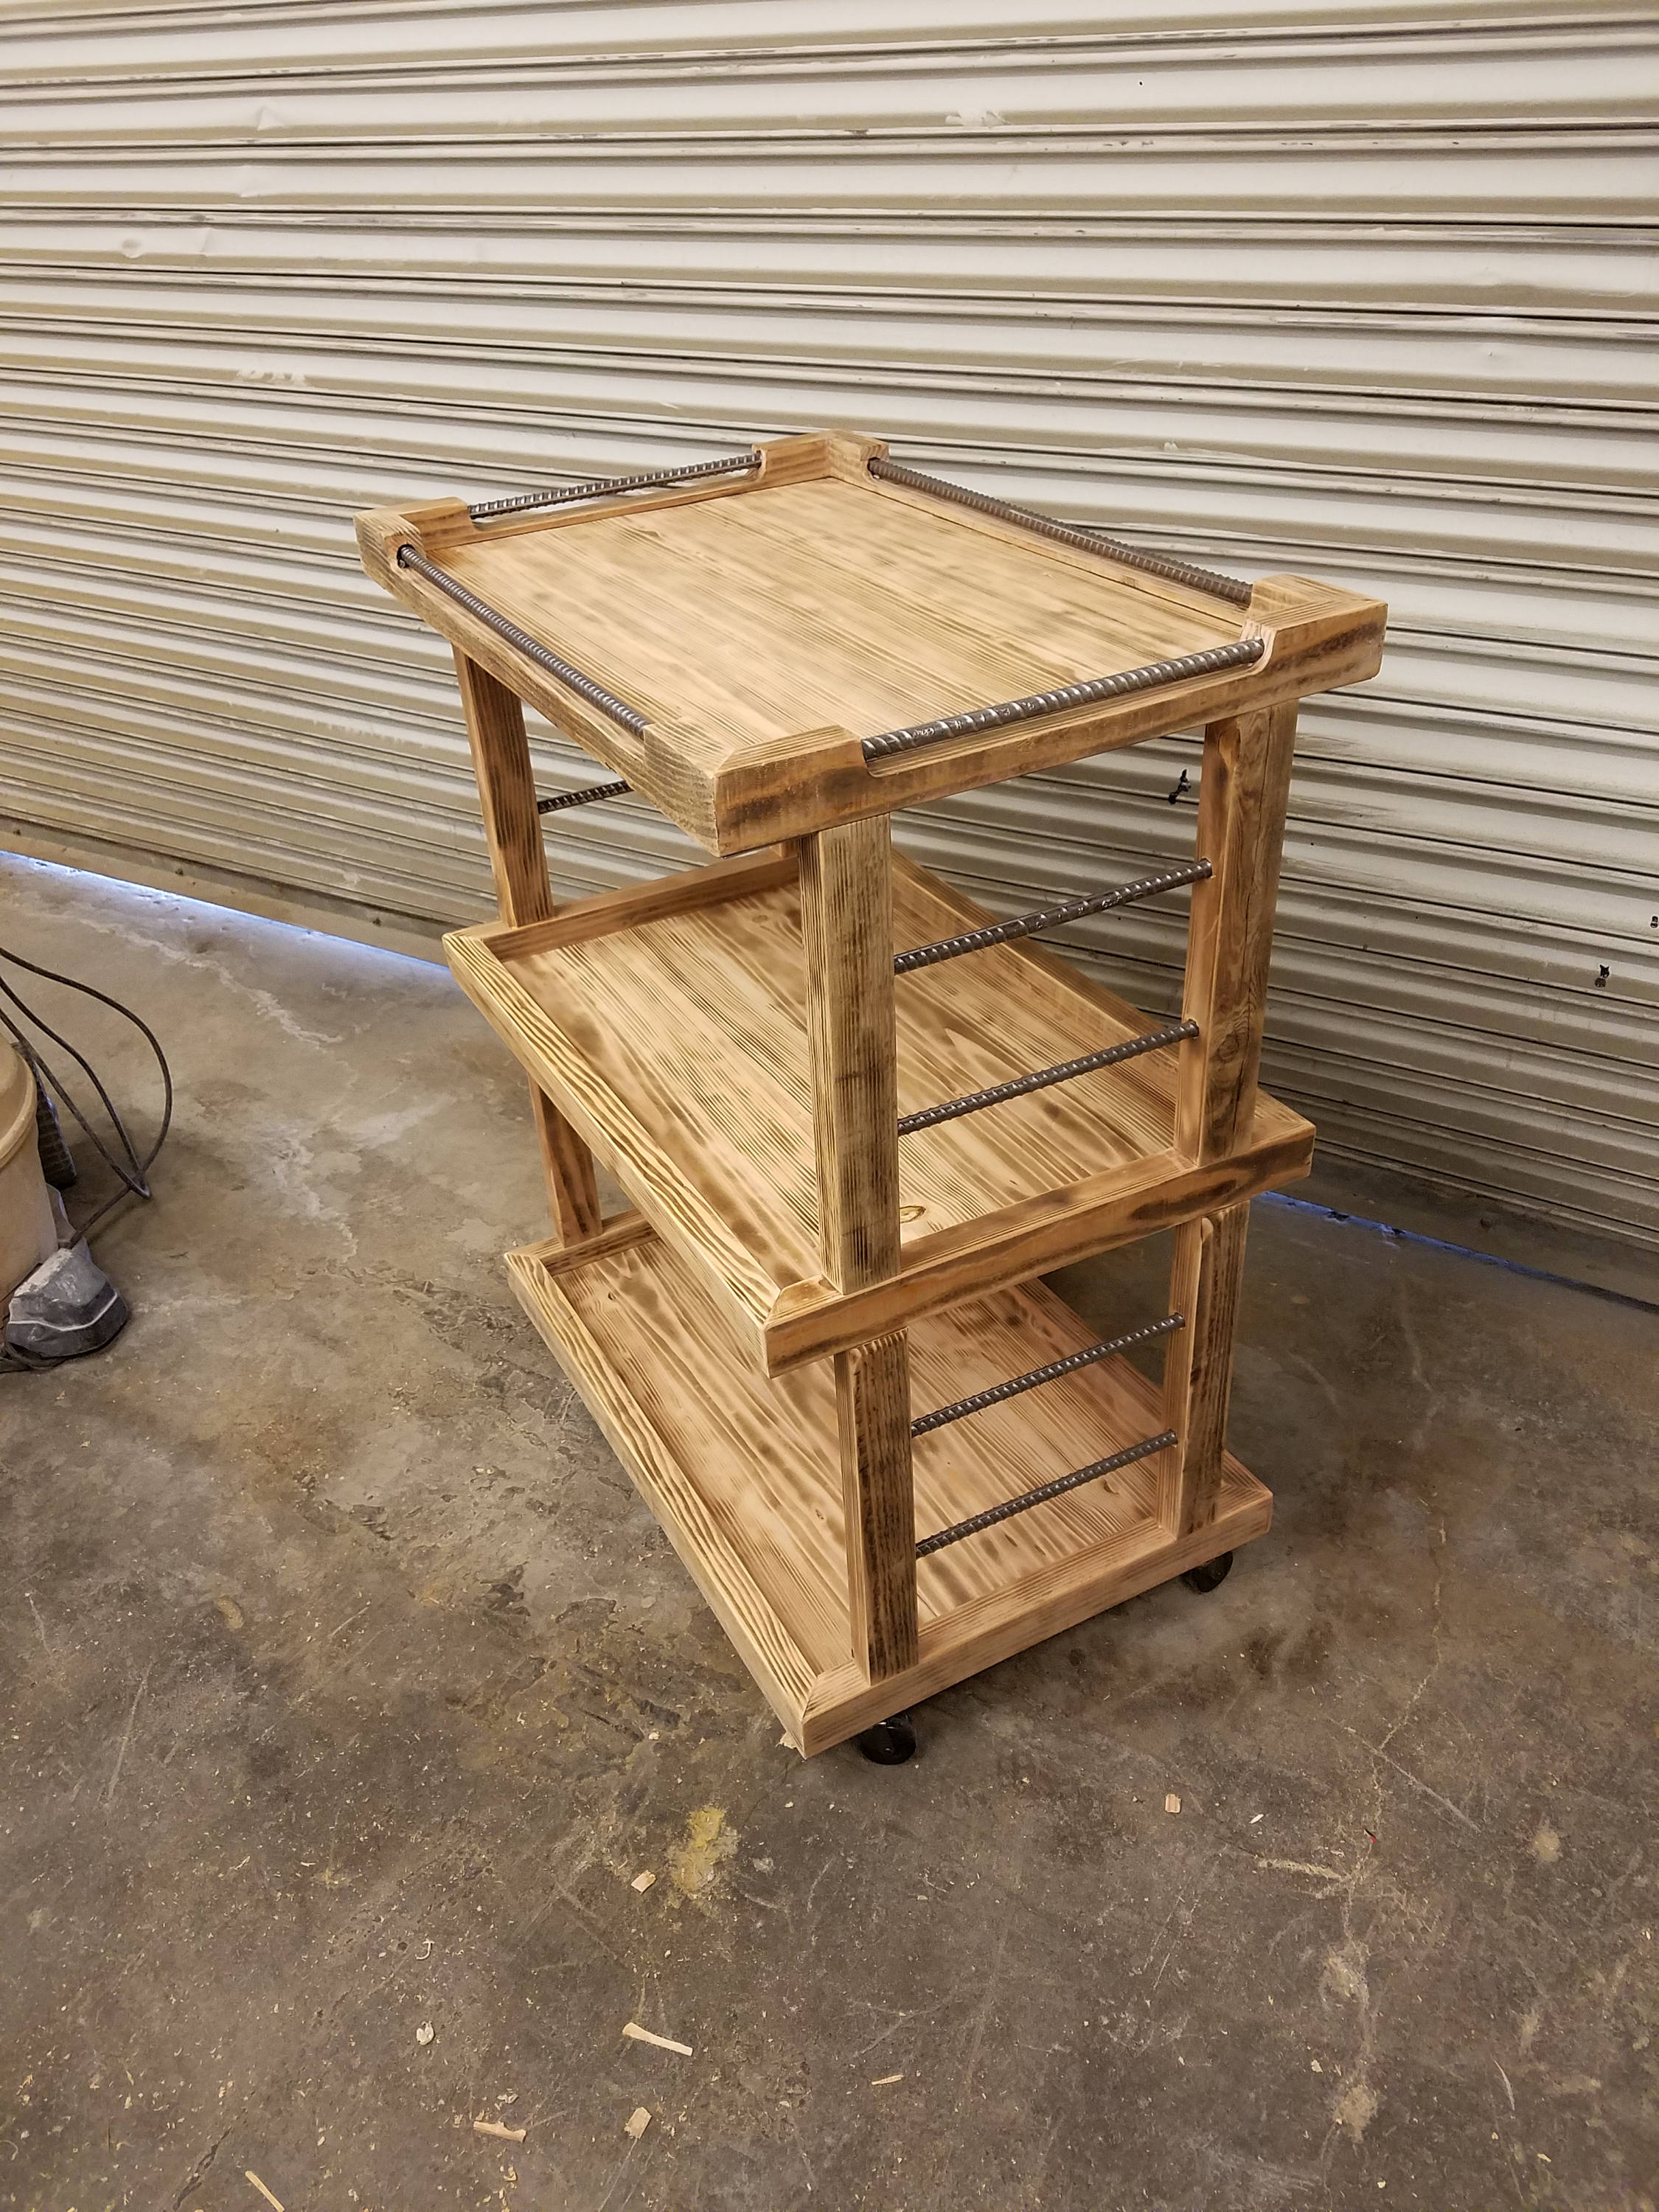 Reclaimed Wood Bar Cart Rustic Bar Cart | Etsy